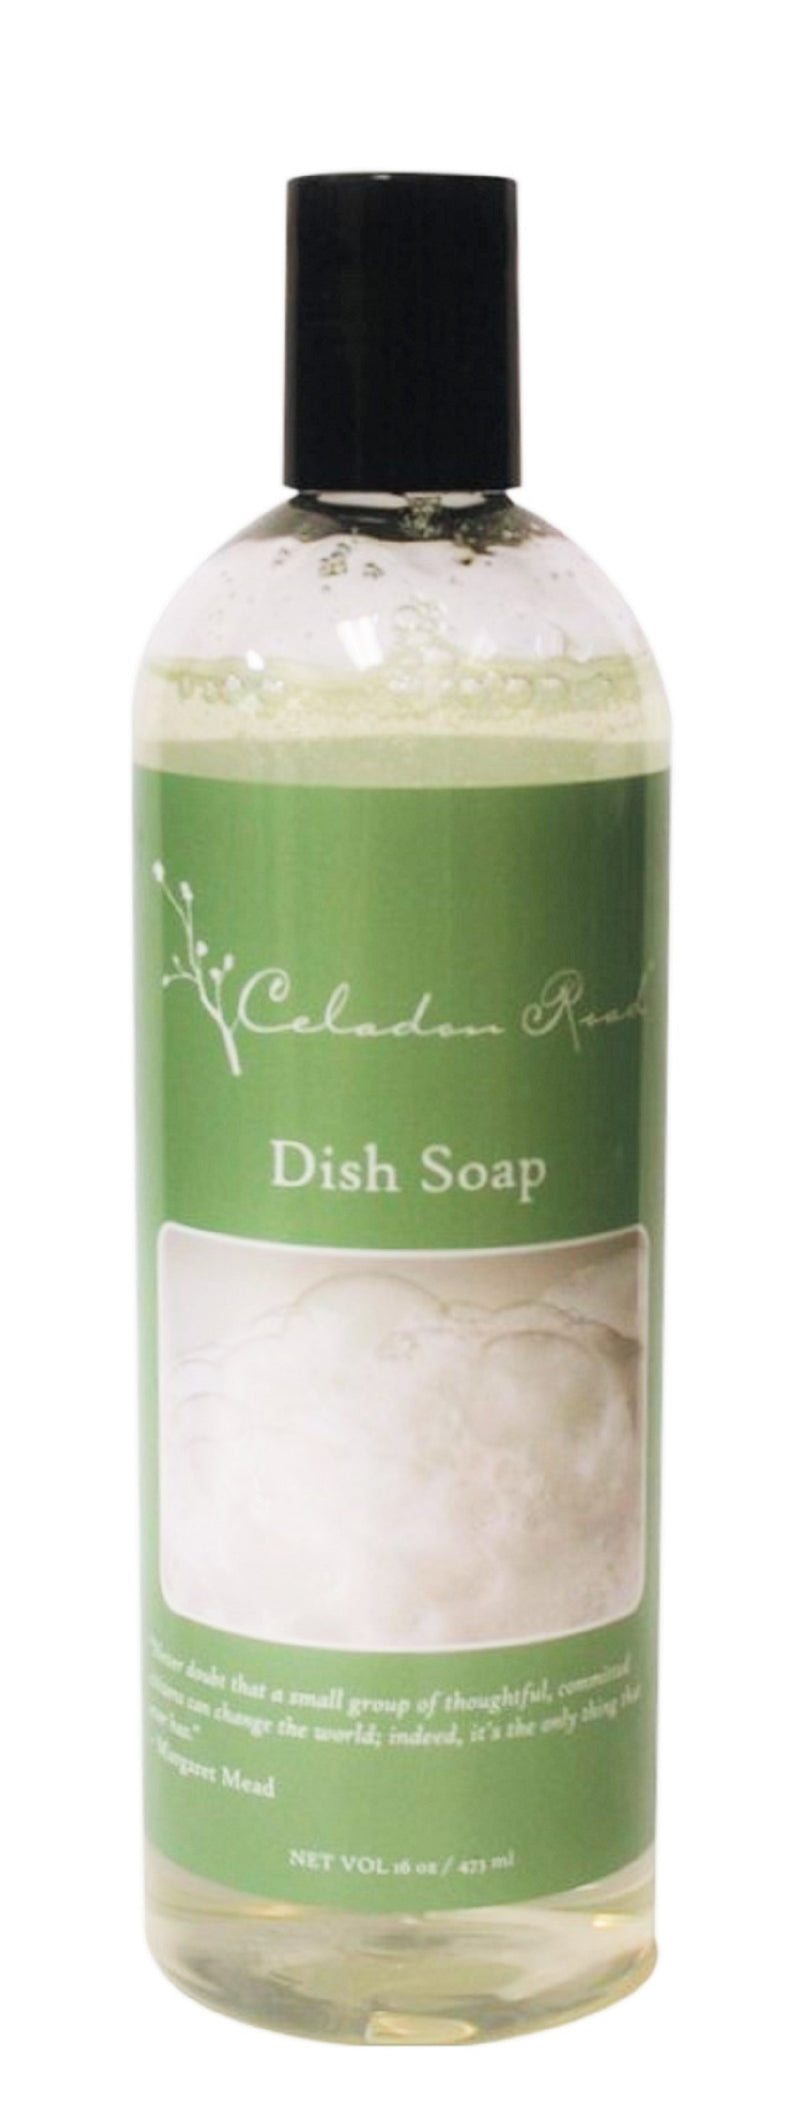 Dish Soap- Celadon Road- www.celadonroad.com